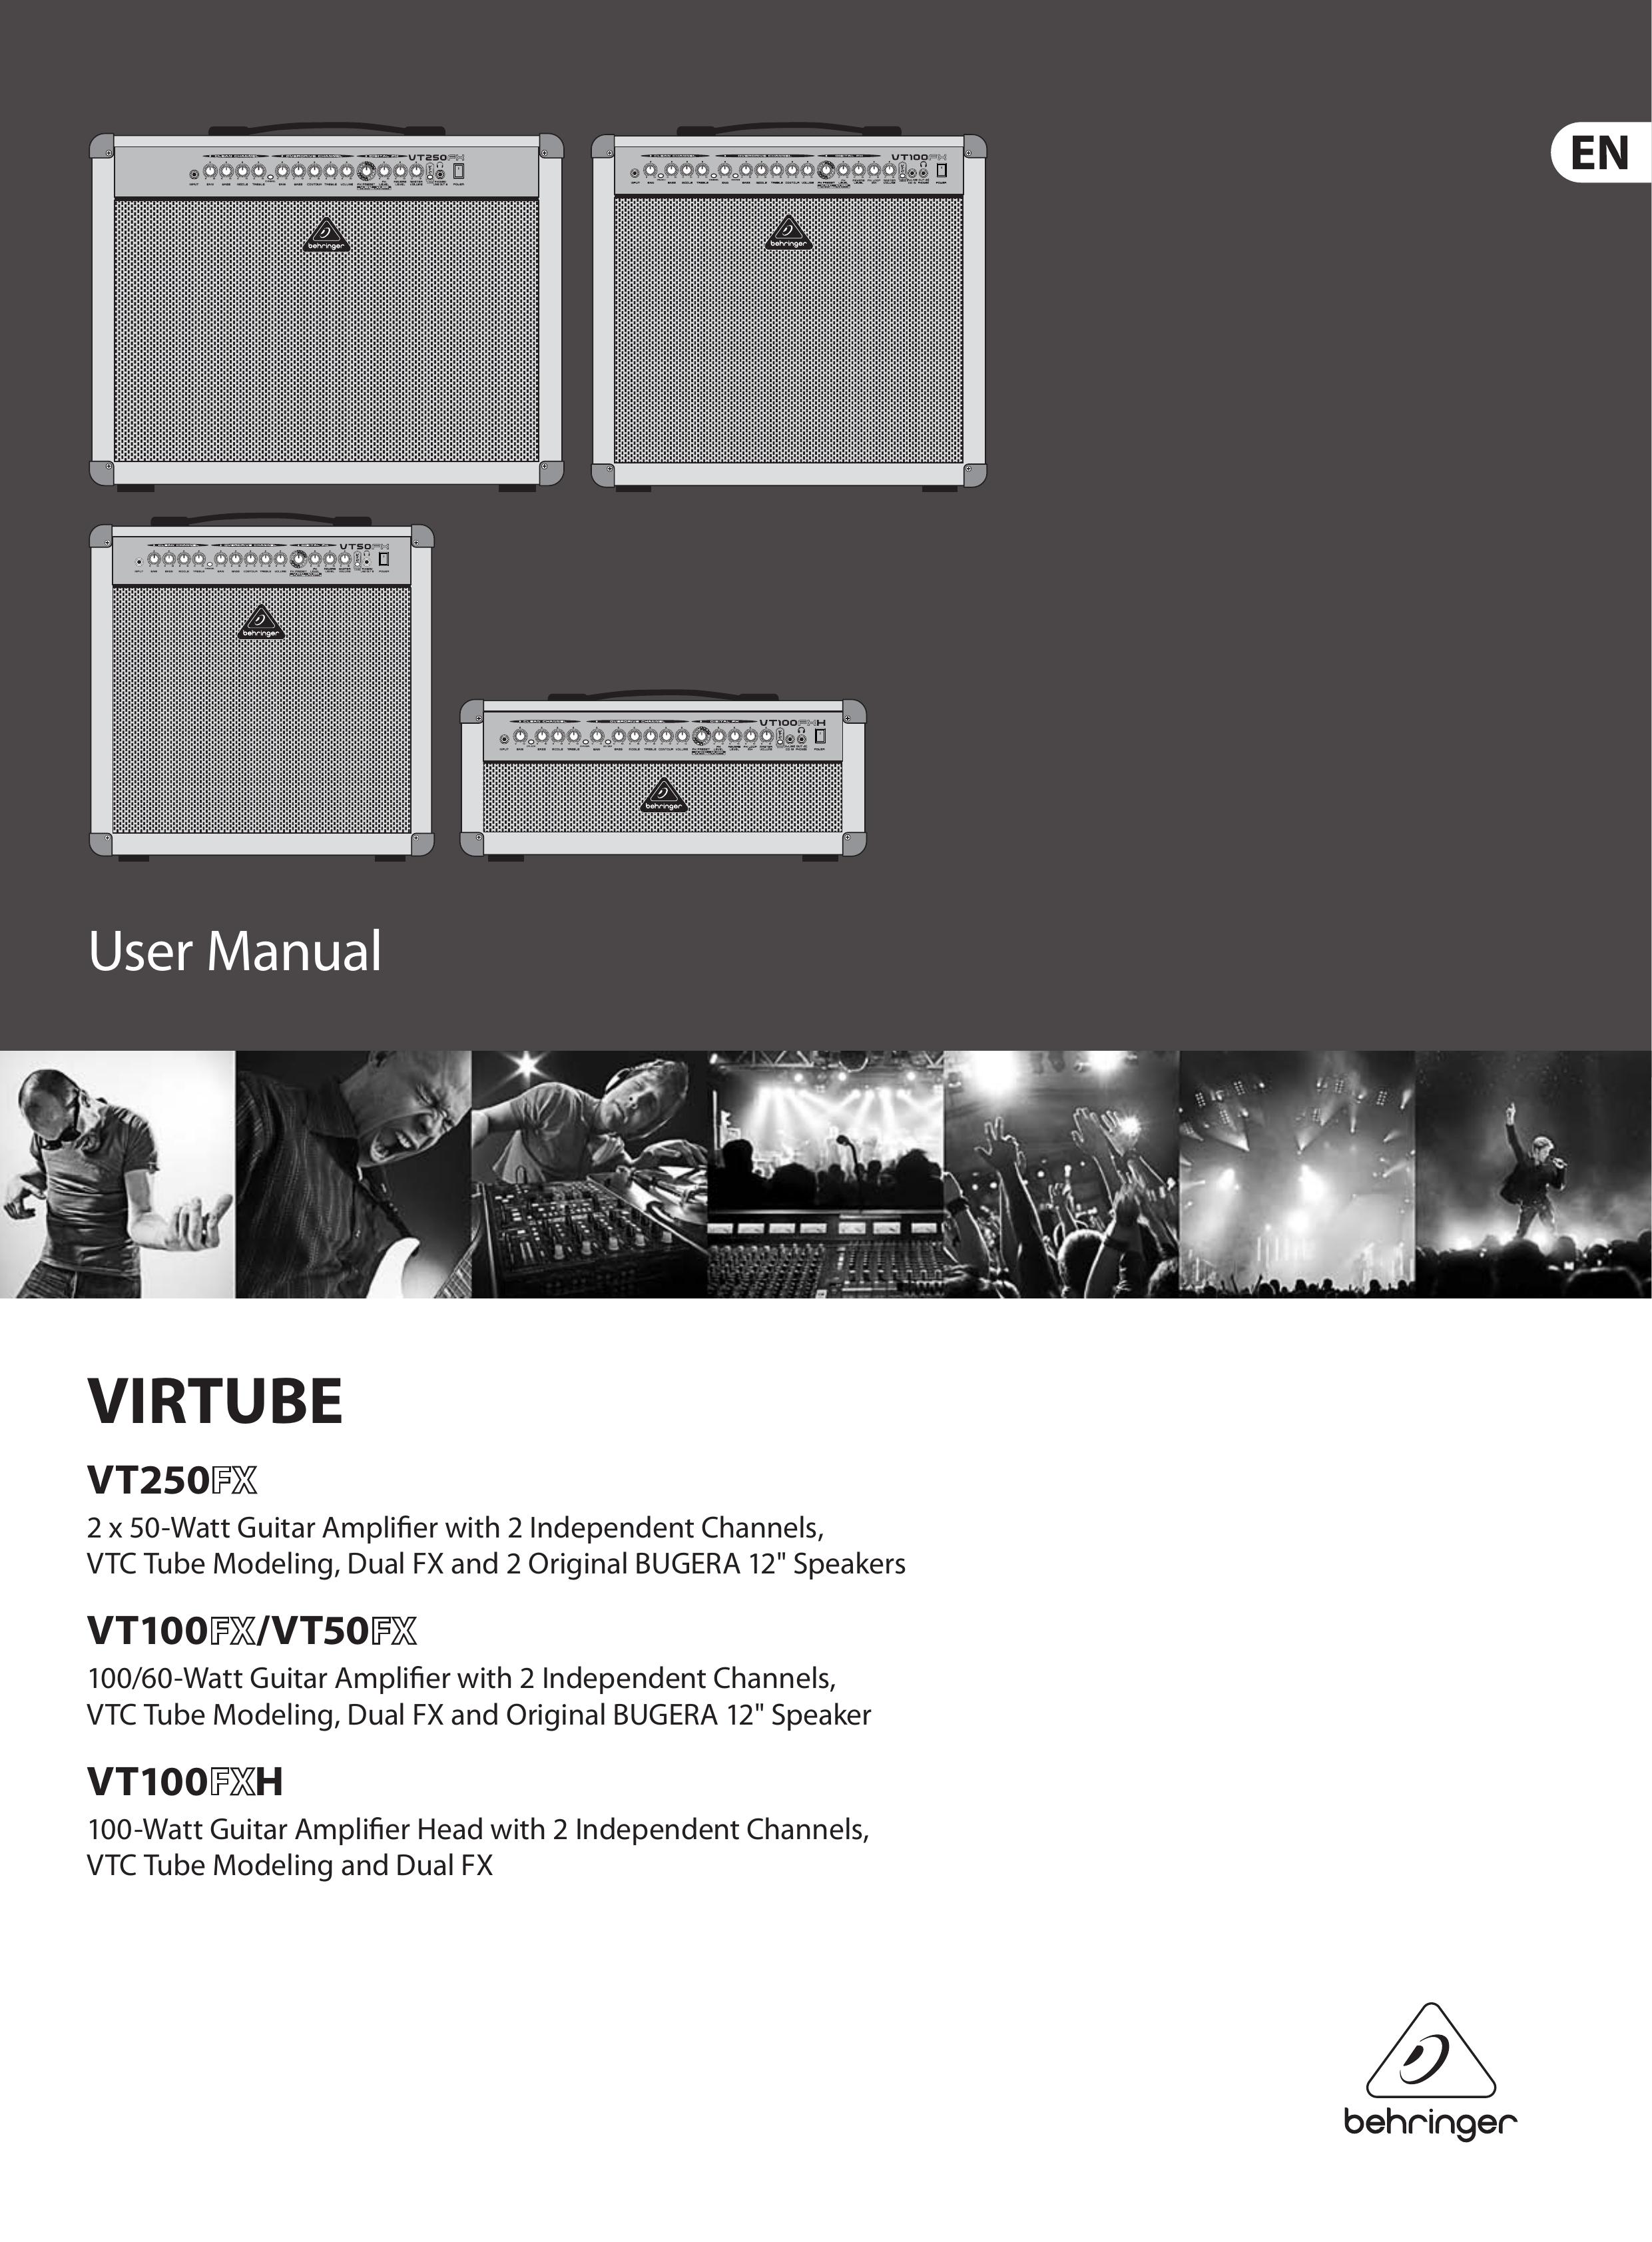 Behringer FX/VT100FXH Musical Instrument Amplifier User Manual